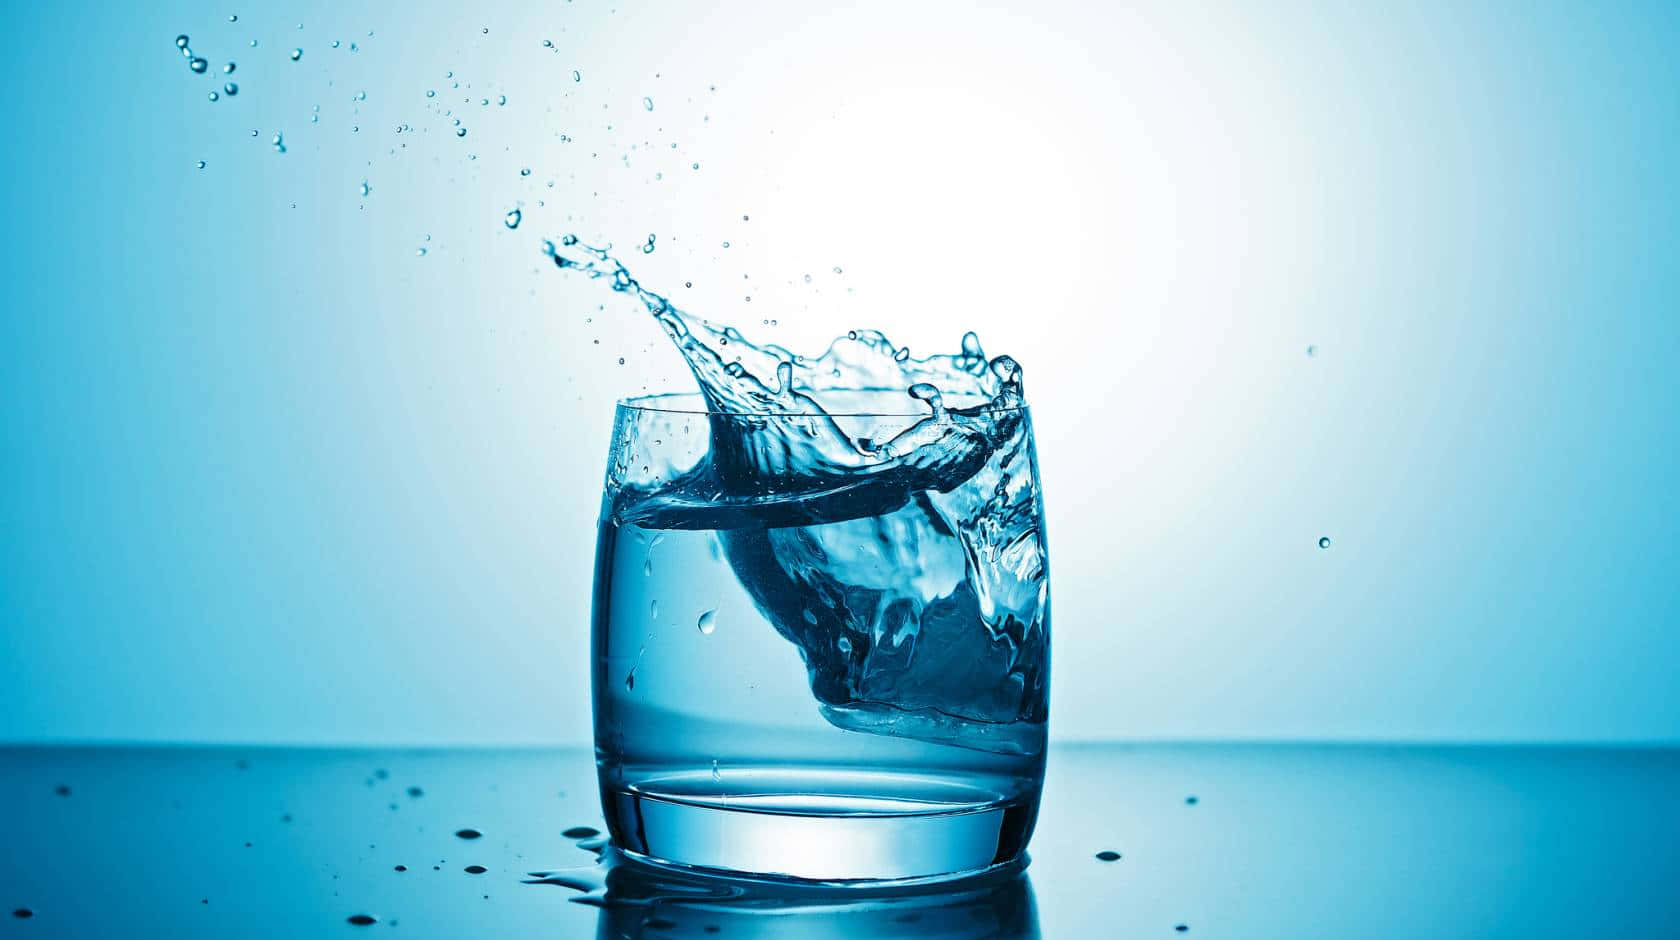 Einglas Wasser Mit Spritzendem Wasser Darin.